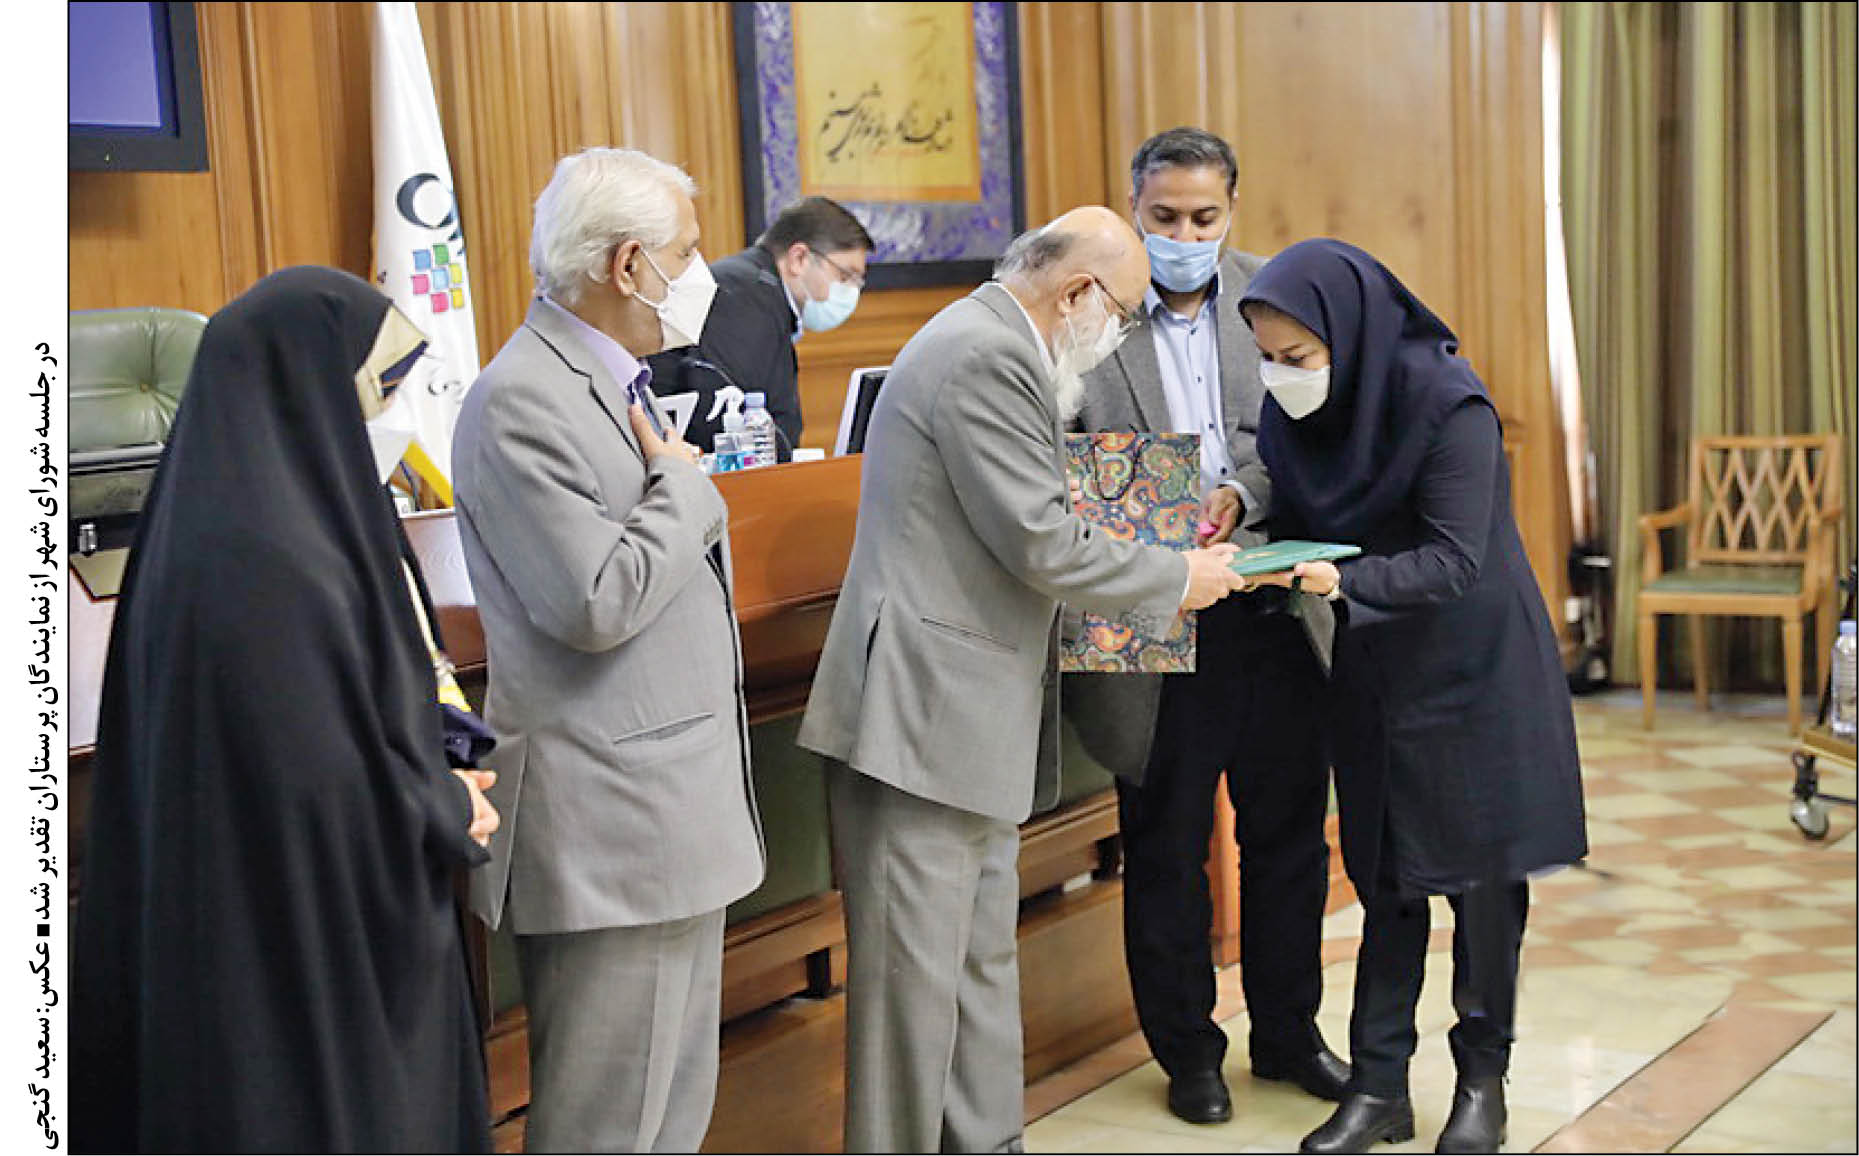 اعضای پارلمان شهری با انتقال رویدادهای نمایشگاهی به شهر آفتاب و کاهش 11هزارمیلیاردی بودجه 1400شهرداری تهران موافقت کردند